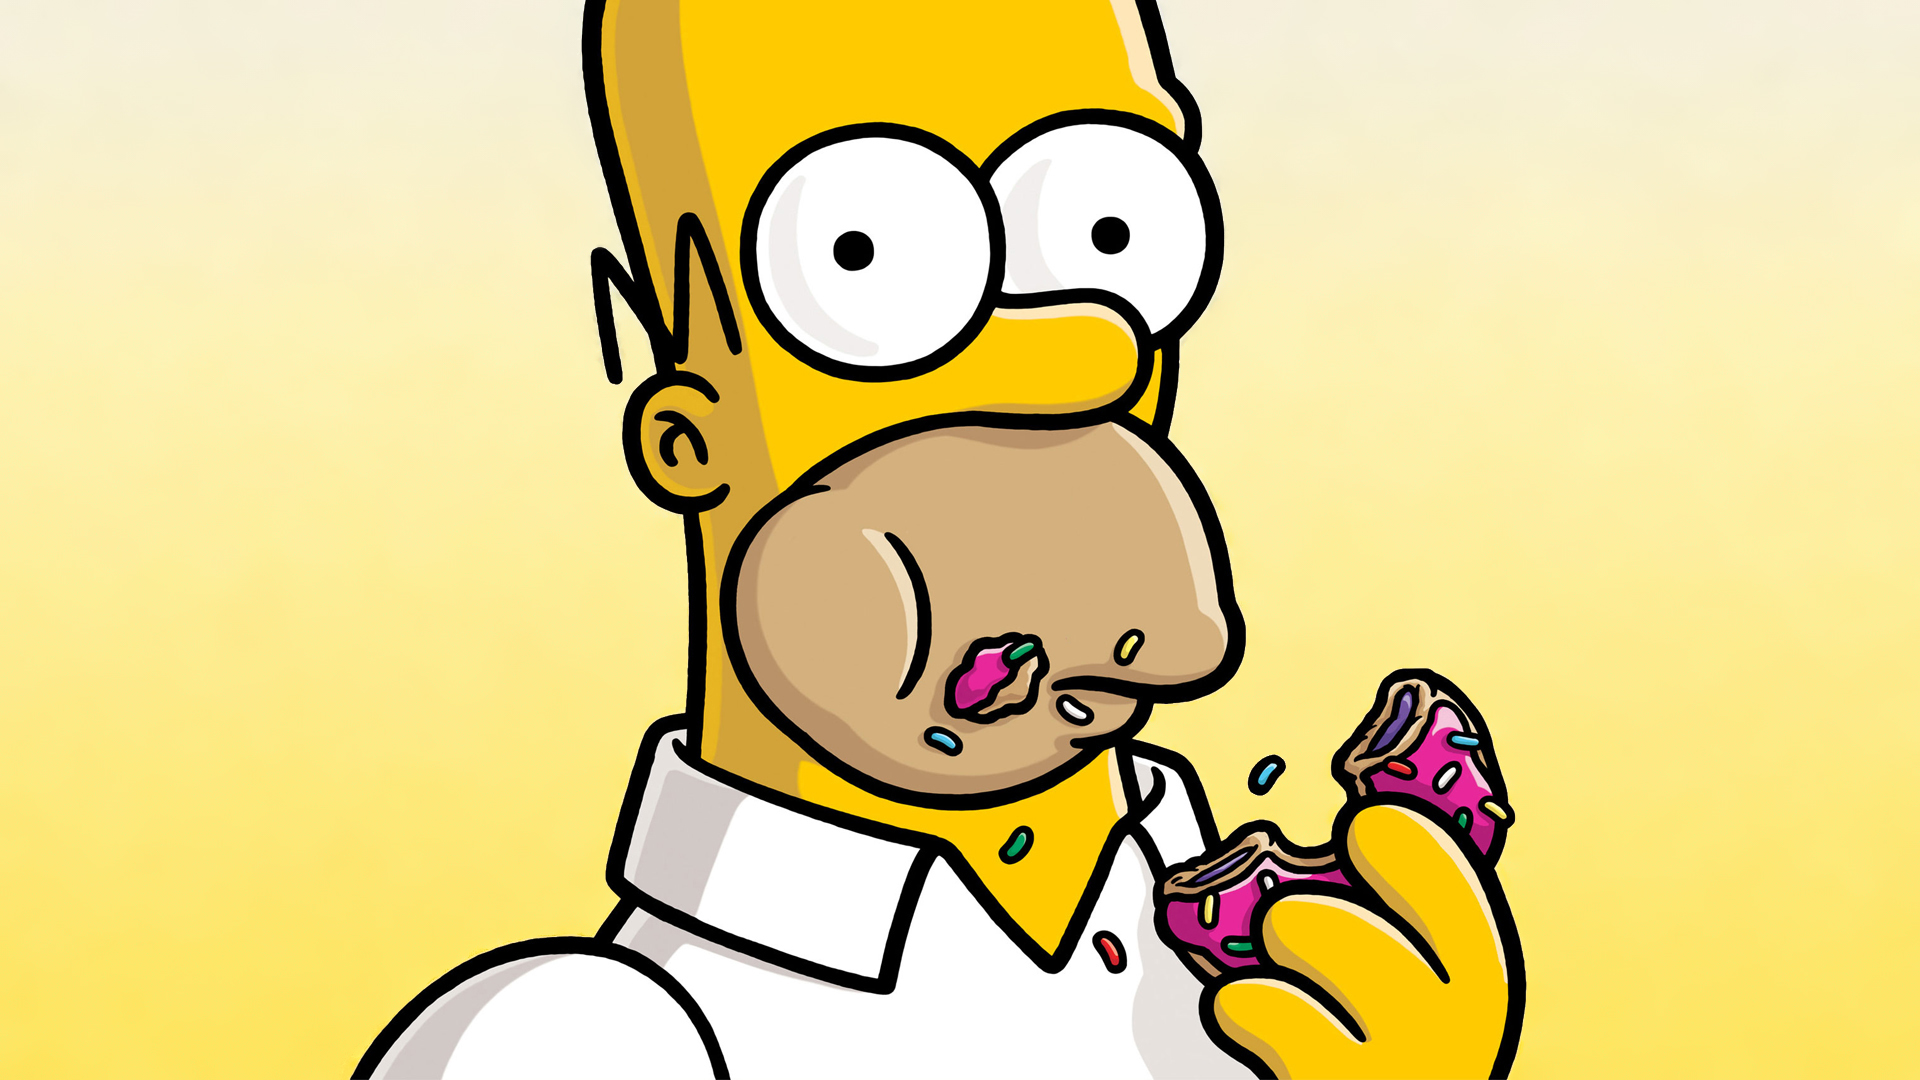 Simpson icons